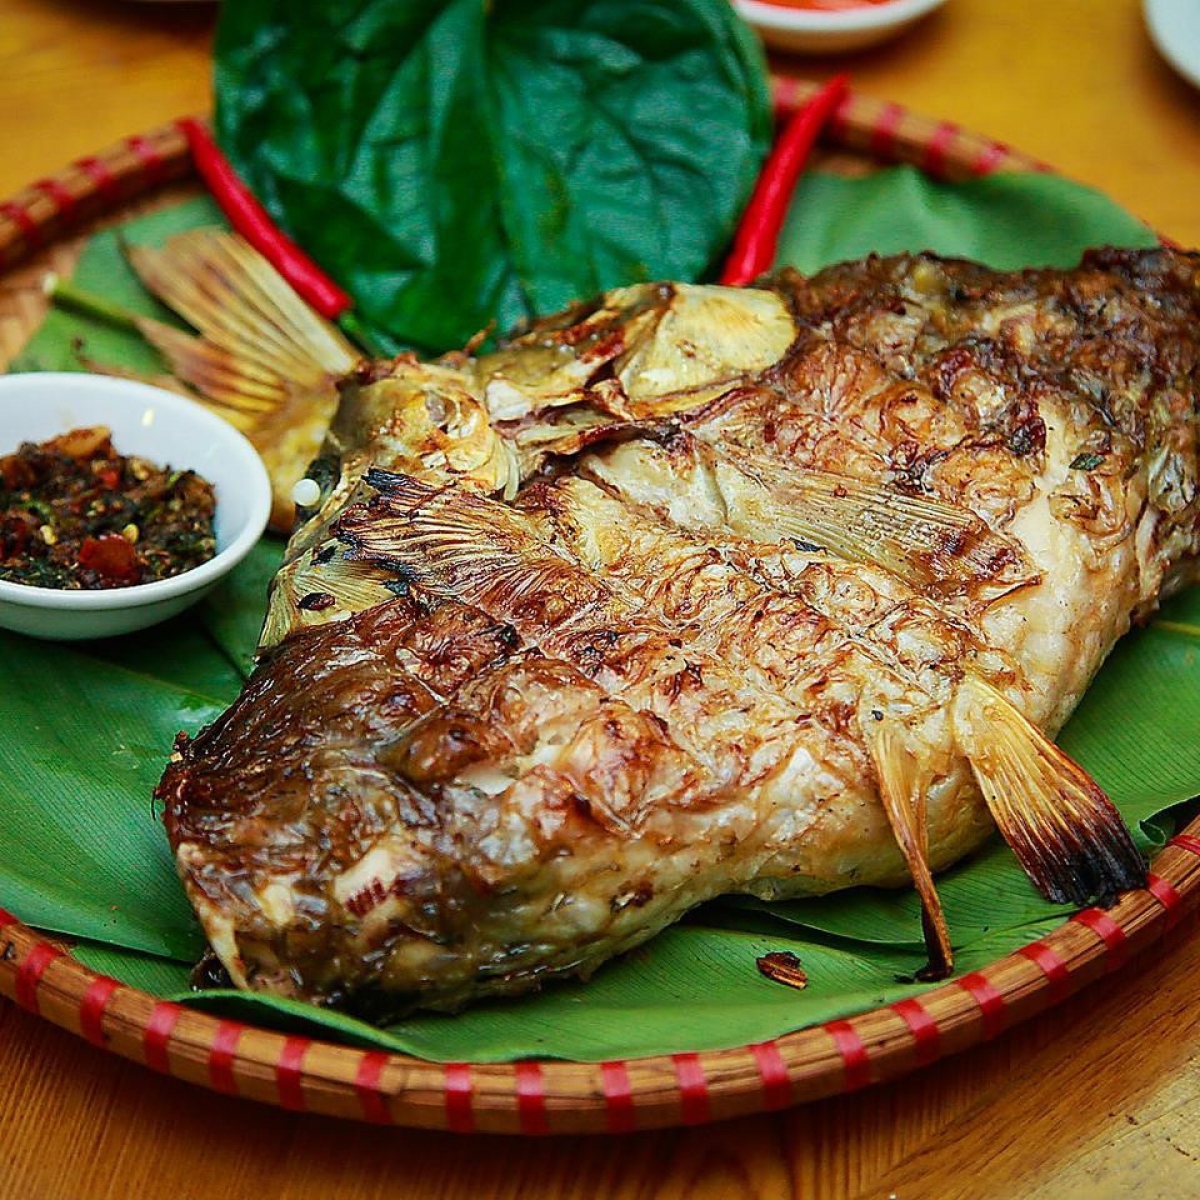 Nghe tên là lạ nhưng thực chất đây là món cá nướng đặc biệt của người Thái ở Tây Bắc. 